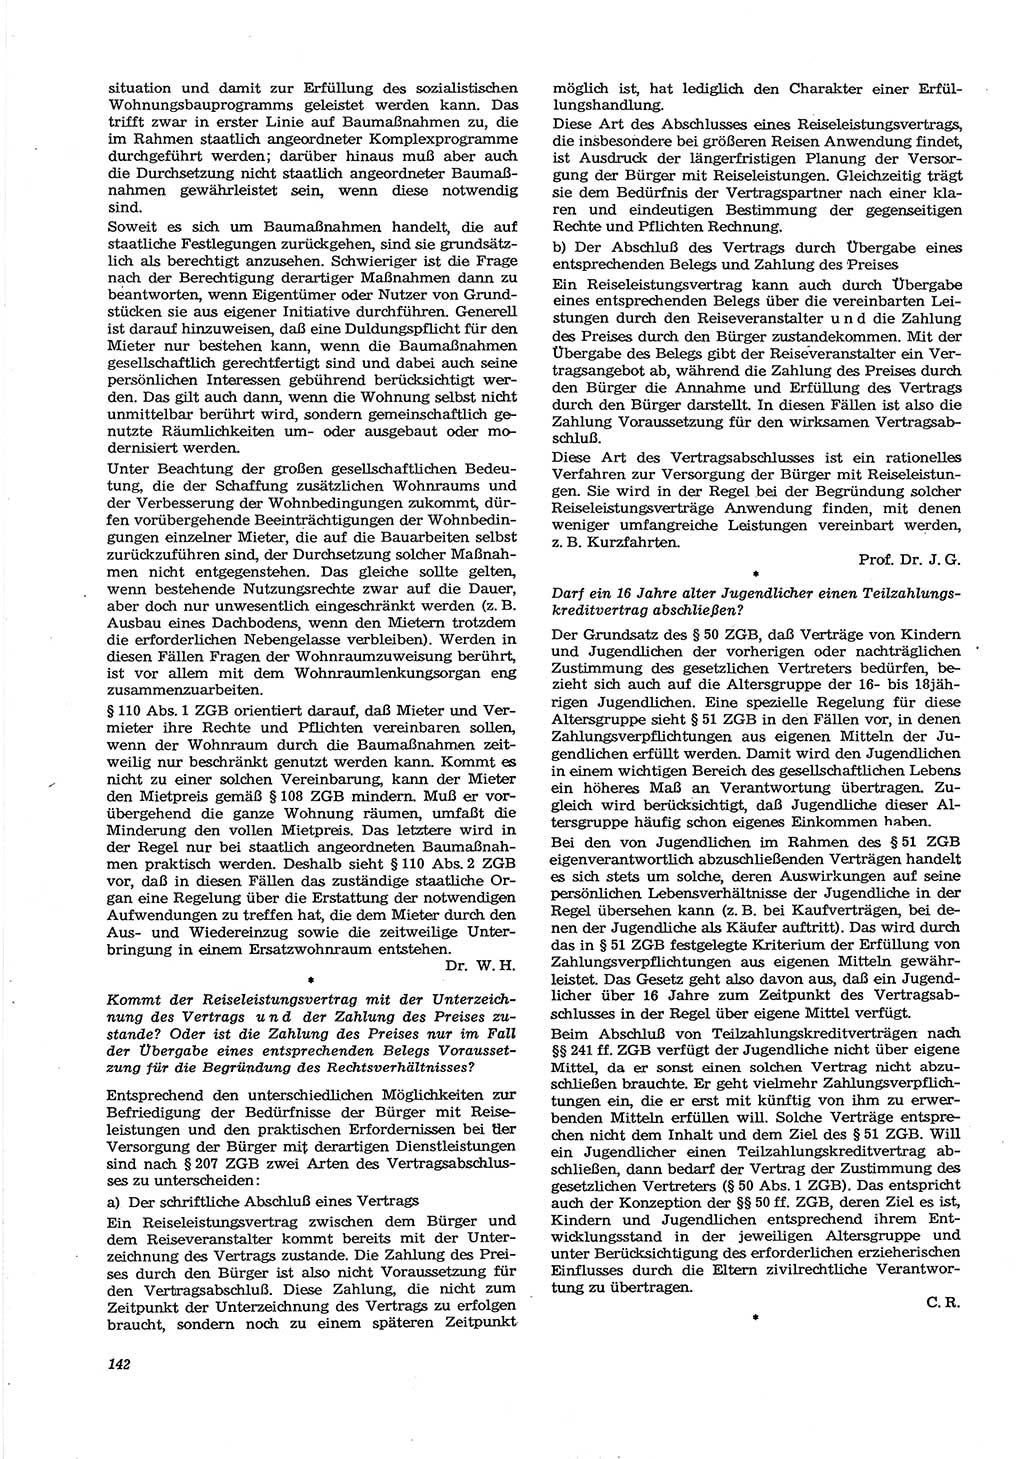 Neue Justiz (NJ), Zeitschrift für Recht und Rechtswissenschaft [Deutsche Demokratische Republik (DDR)], 30. Jahrgang 1976, Seite 142 (NJ DDR 1976, S. 142)